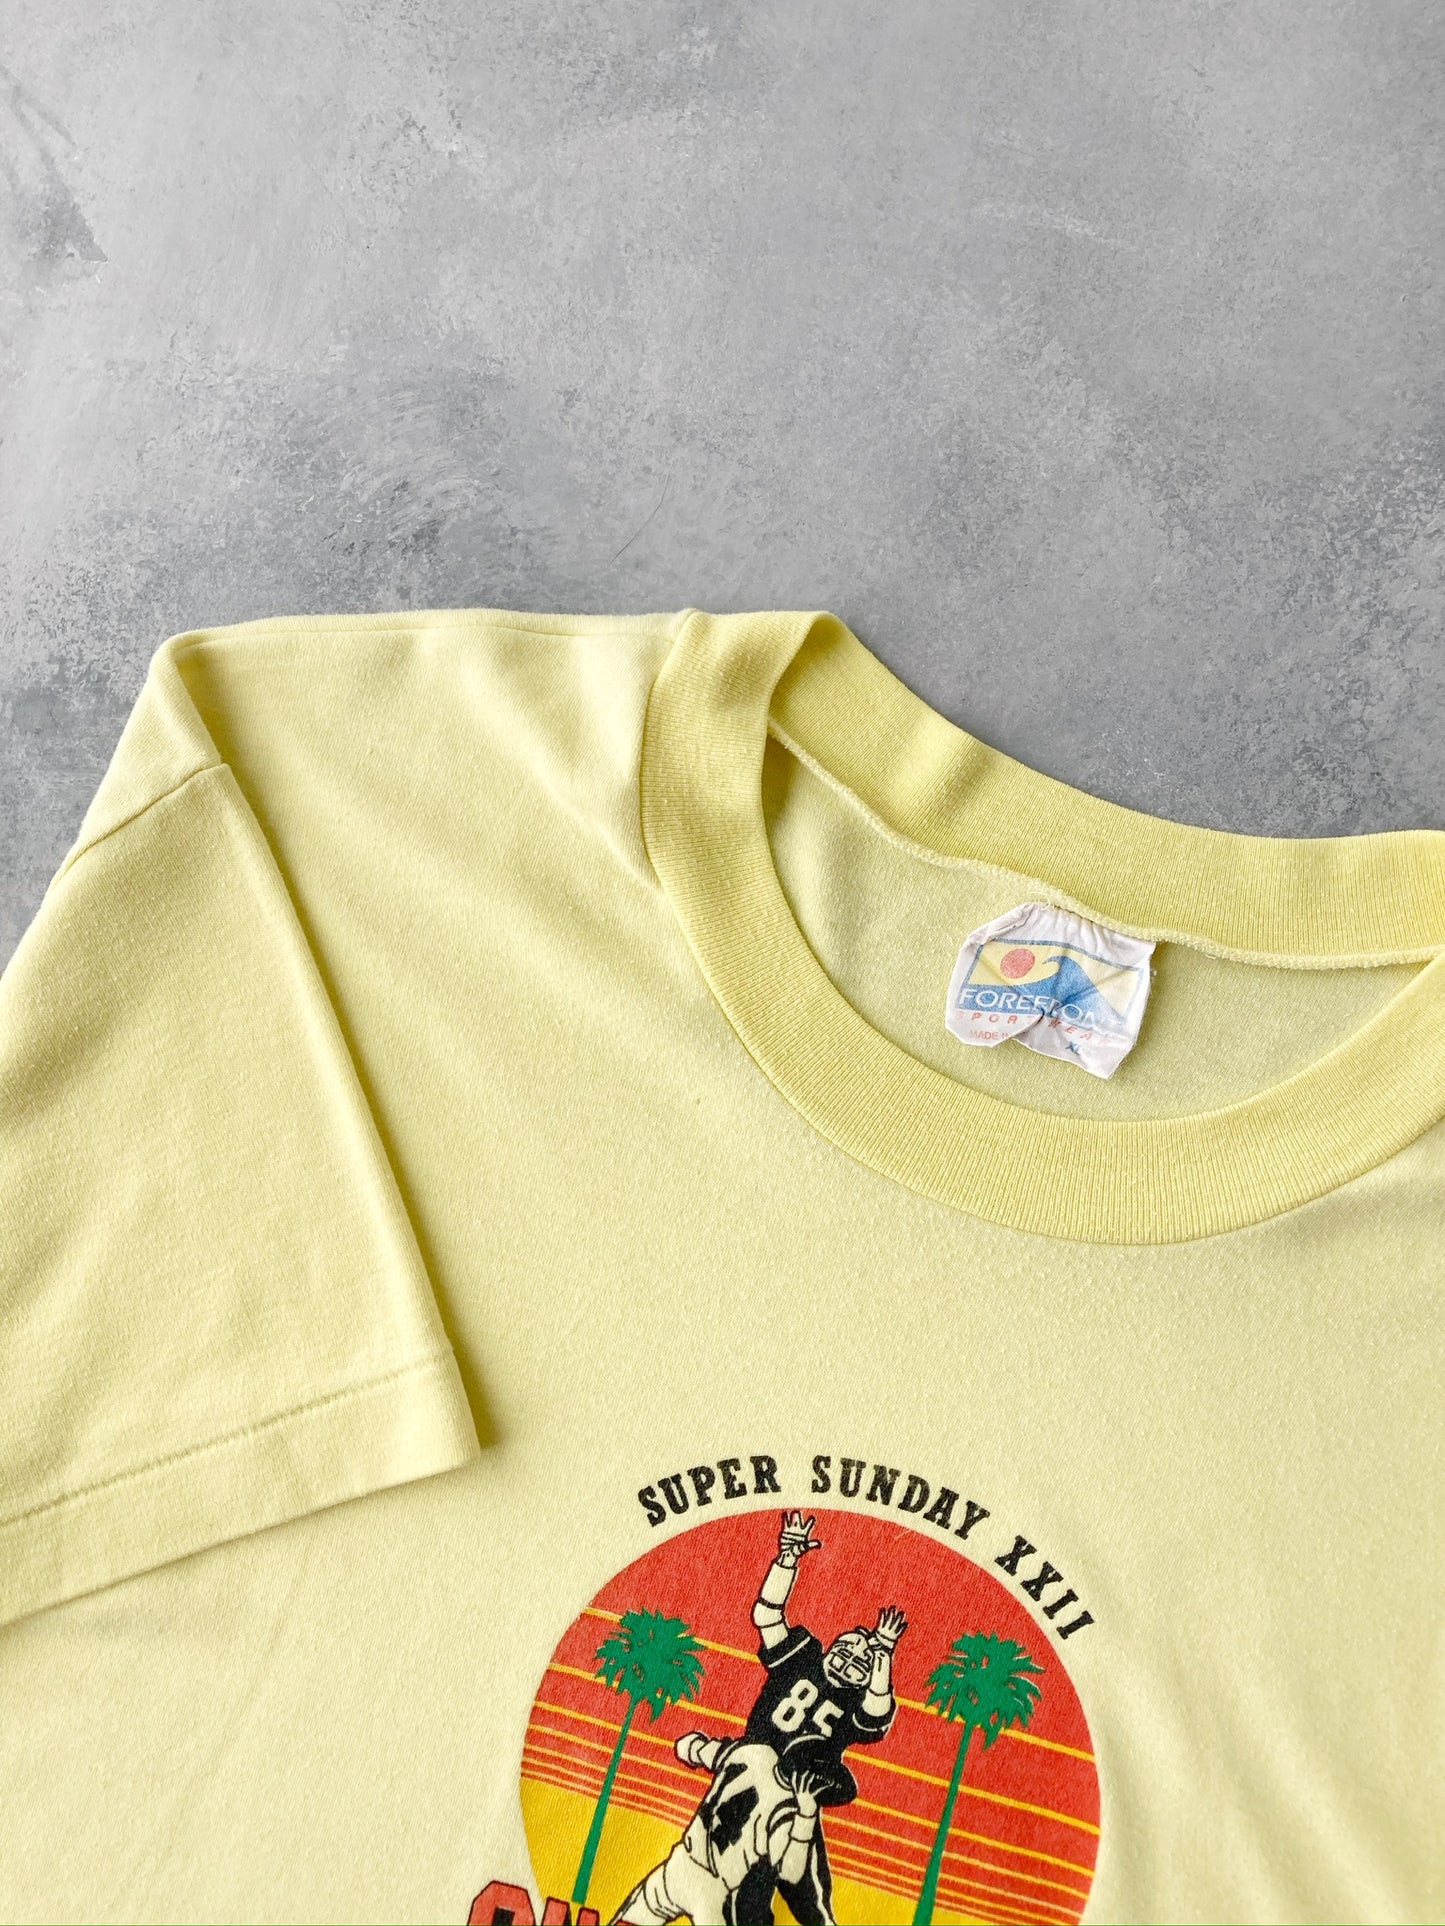 Super Sunday T-Shirt '88 - XL